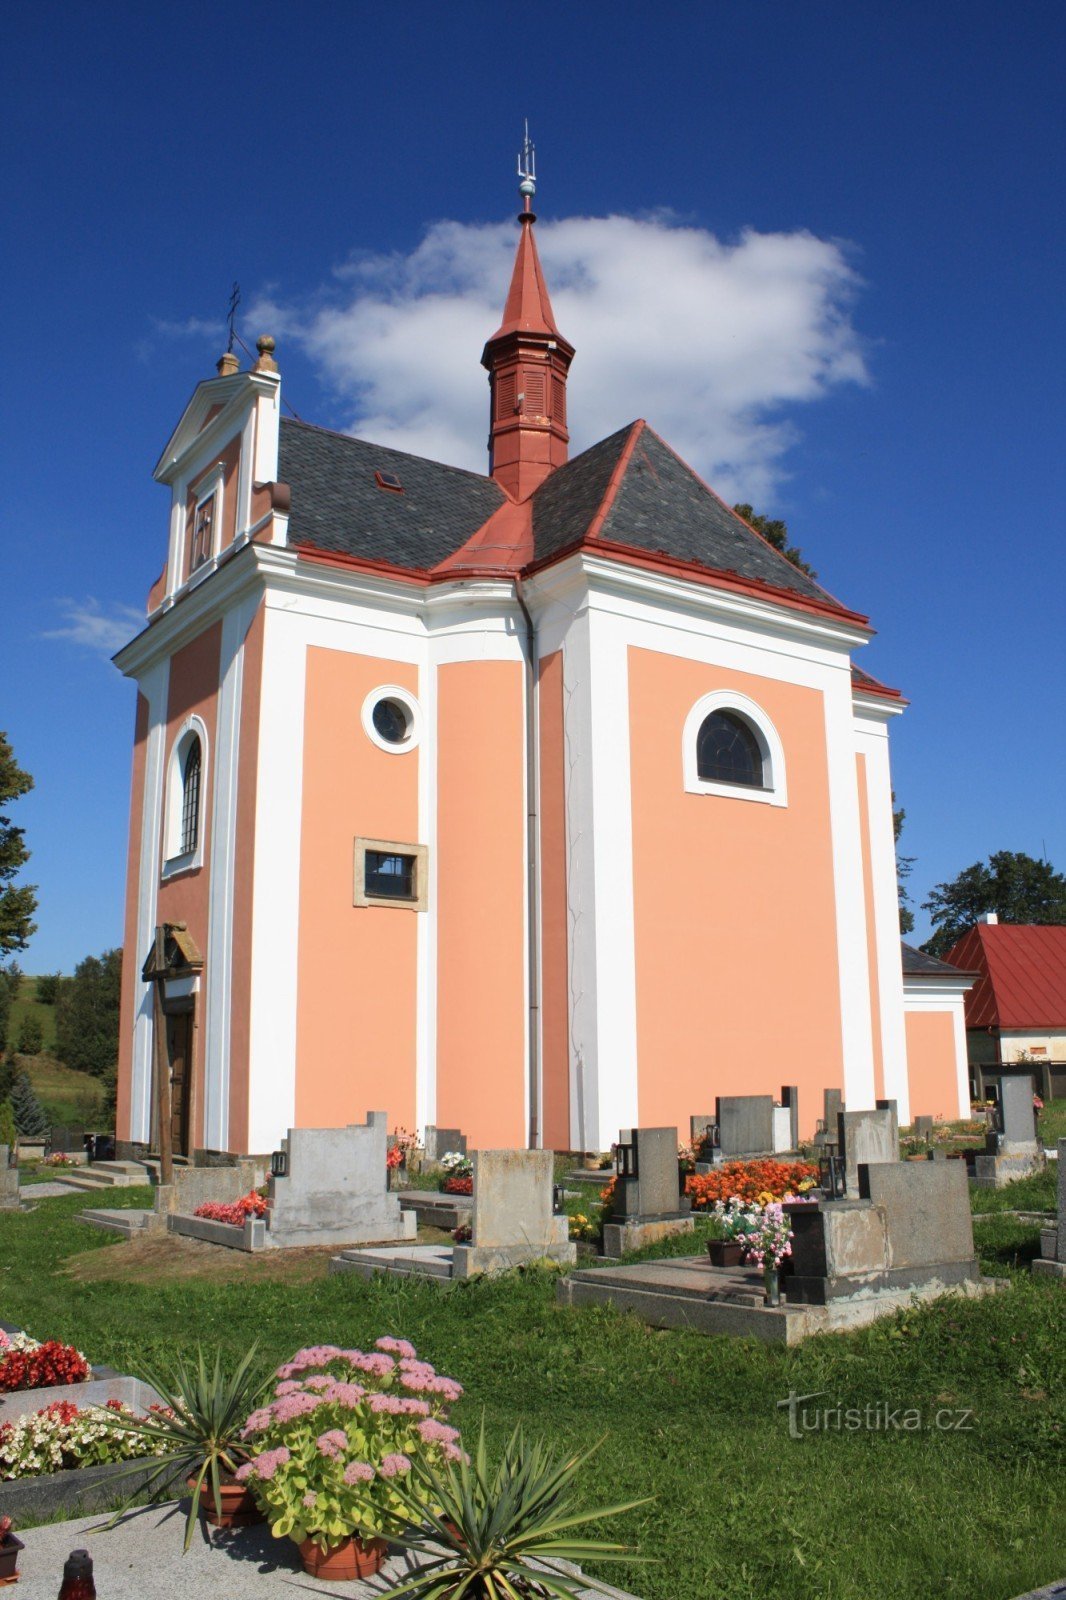 Pustá Kamenice - Pyhän Nikolauksen kirkko. Anne